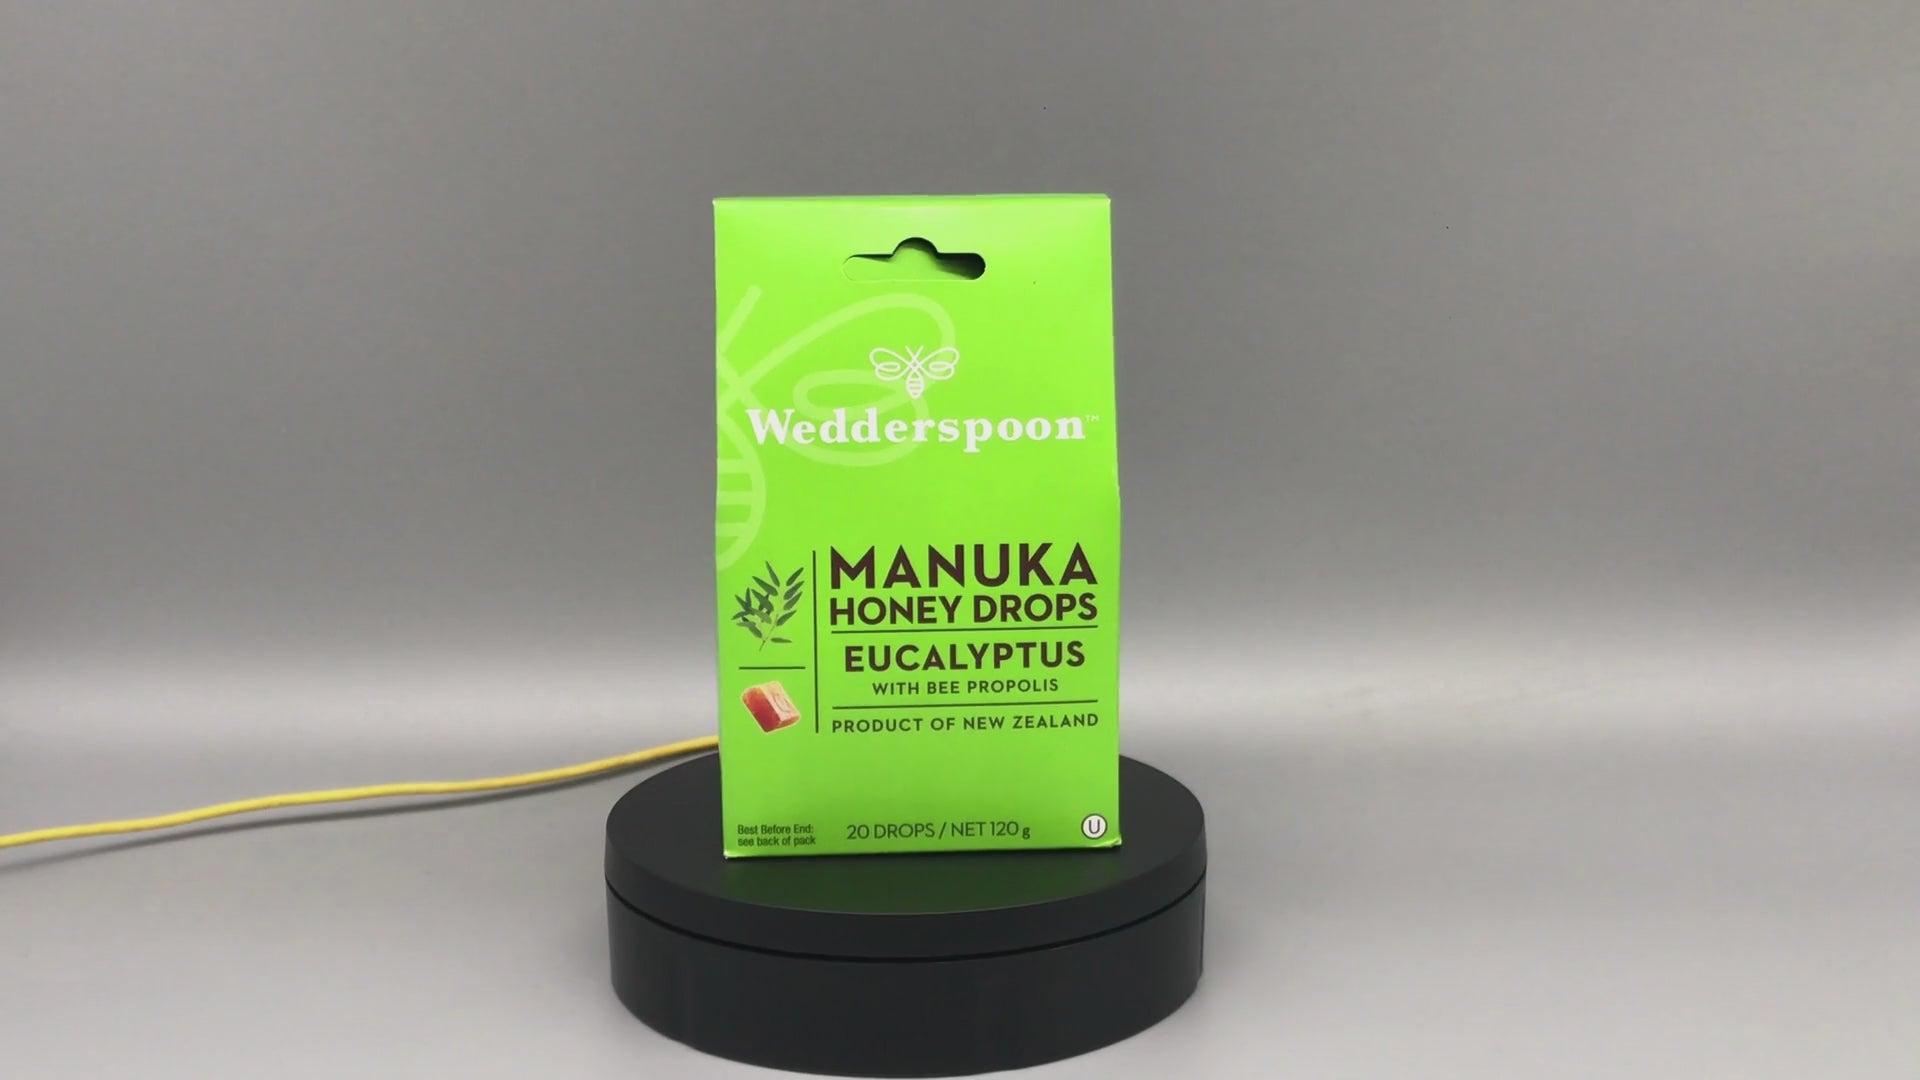 Wedderspoon Natural Manuka Honey Drops Eucalyptus (20 Drops per box)